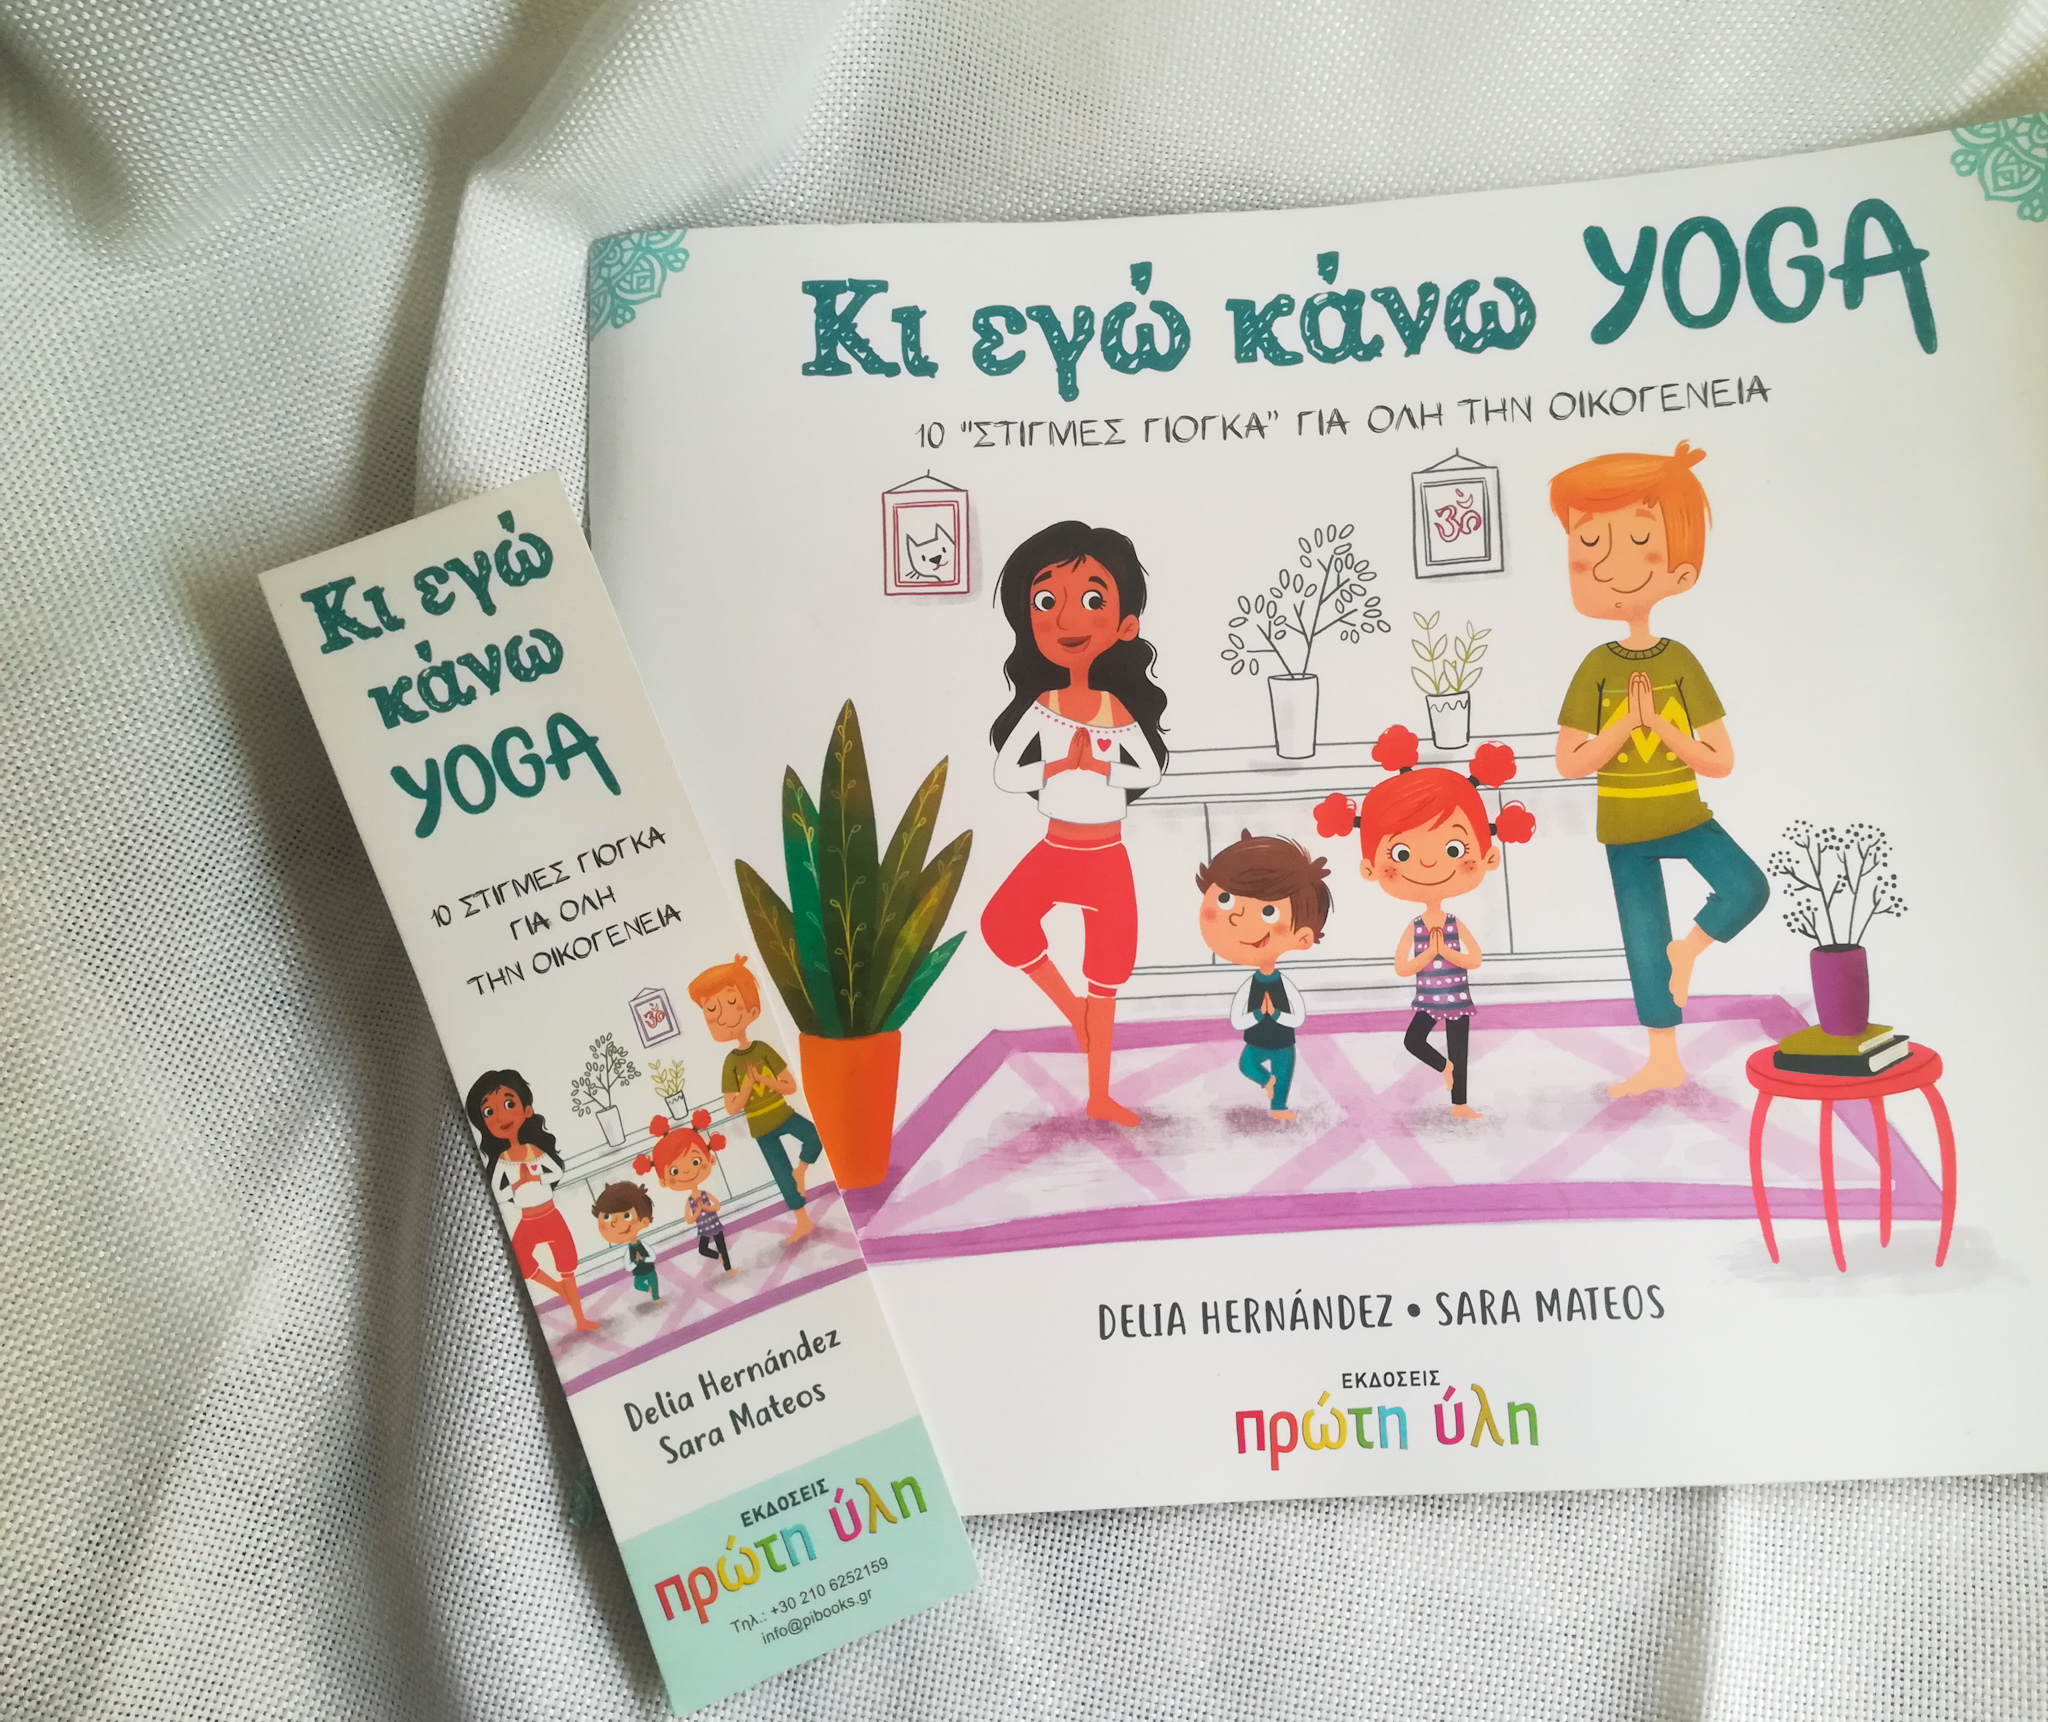 Λοιπόν, τι λες; Μήπως ήρθε η ωρα να εντάξεις κι εσύ τη Yoga στη ζωή σου; Μια καλή ιδέα θα ήταν να διαβάσεις αυτό το βιβλίο! | βιβλία yoga για παιδιά.